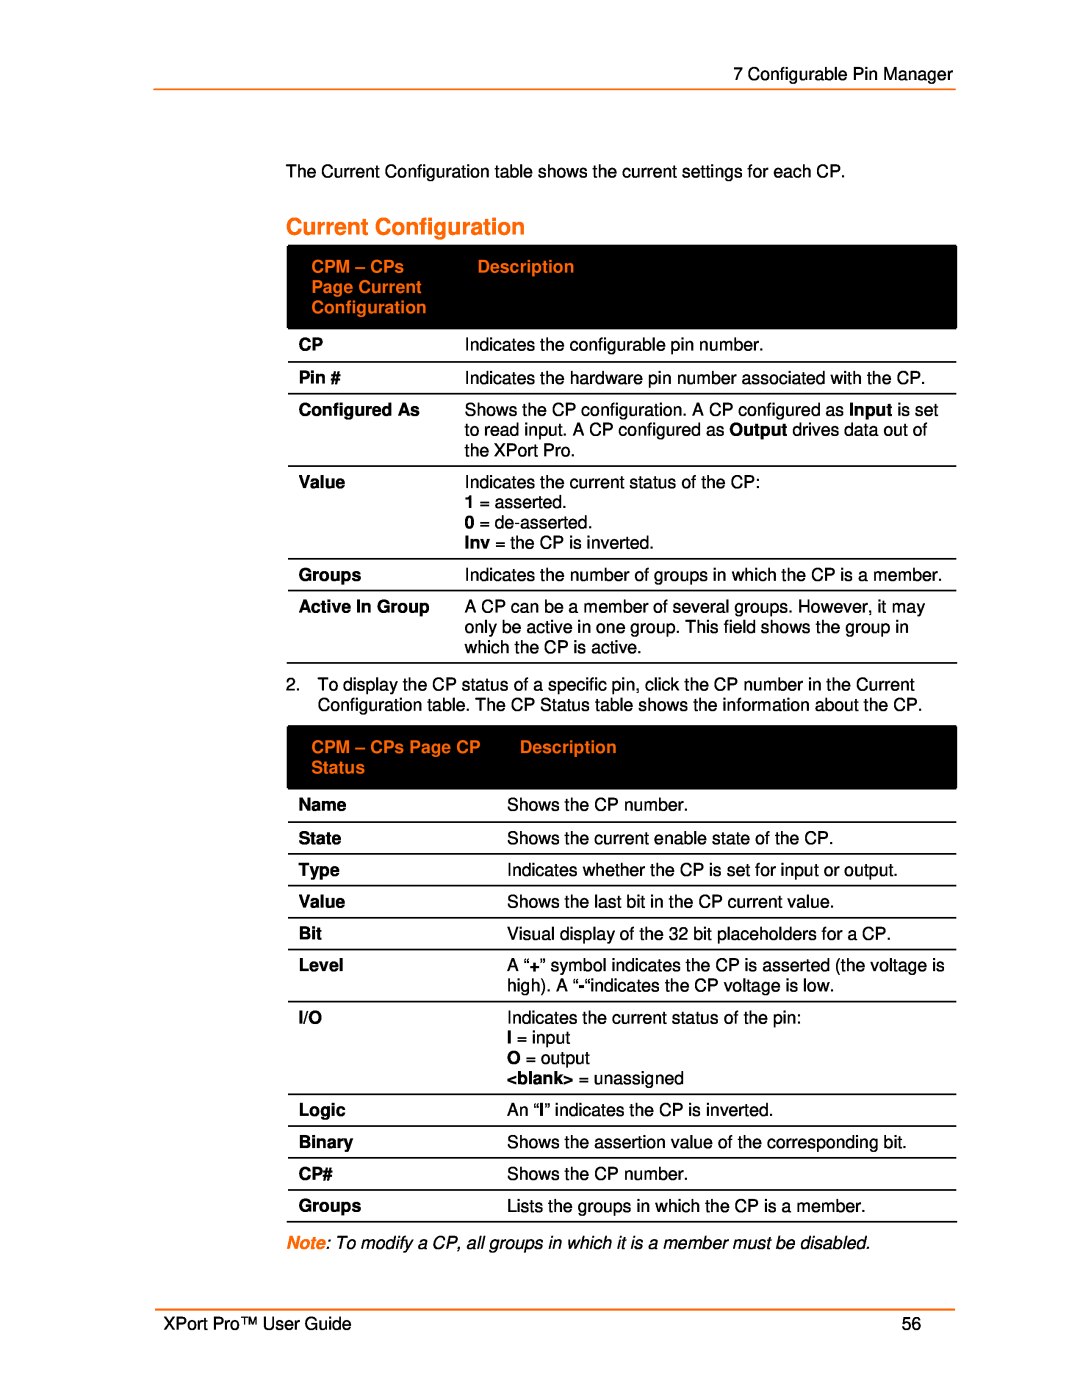 Lantronix 900-560 manual Current Configuration, Description, Page Current, CPM - CPs Page CP, Status 